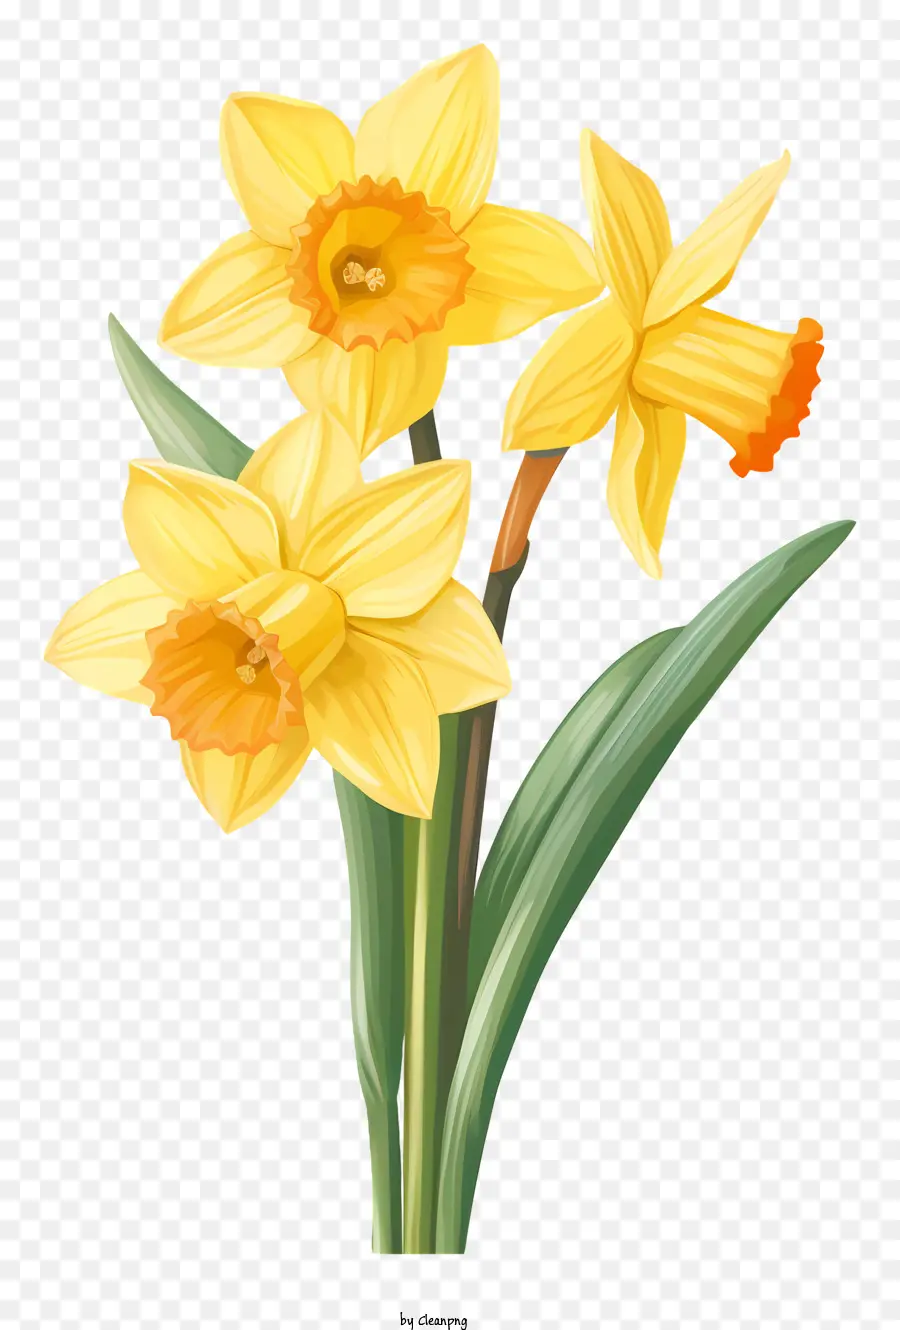 hoa sắp xếp - Hoa thủy tiên trong bình với cánh hoa màu vàng